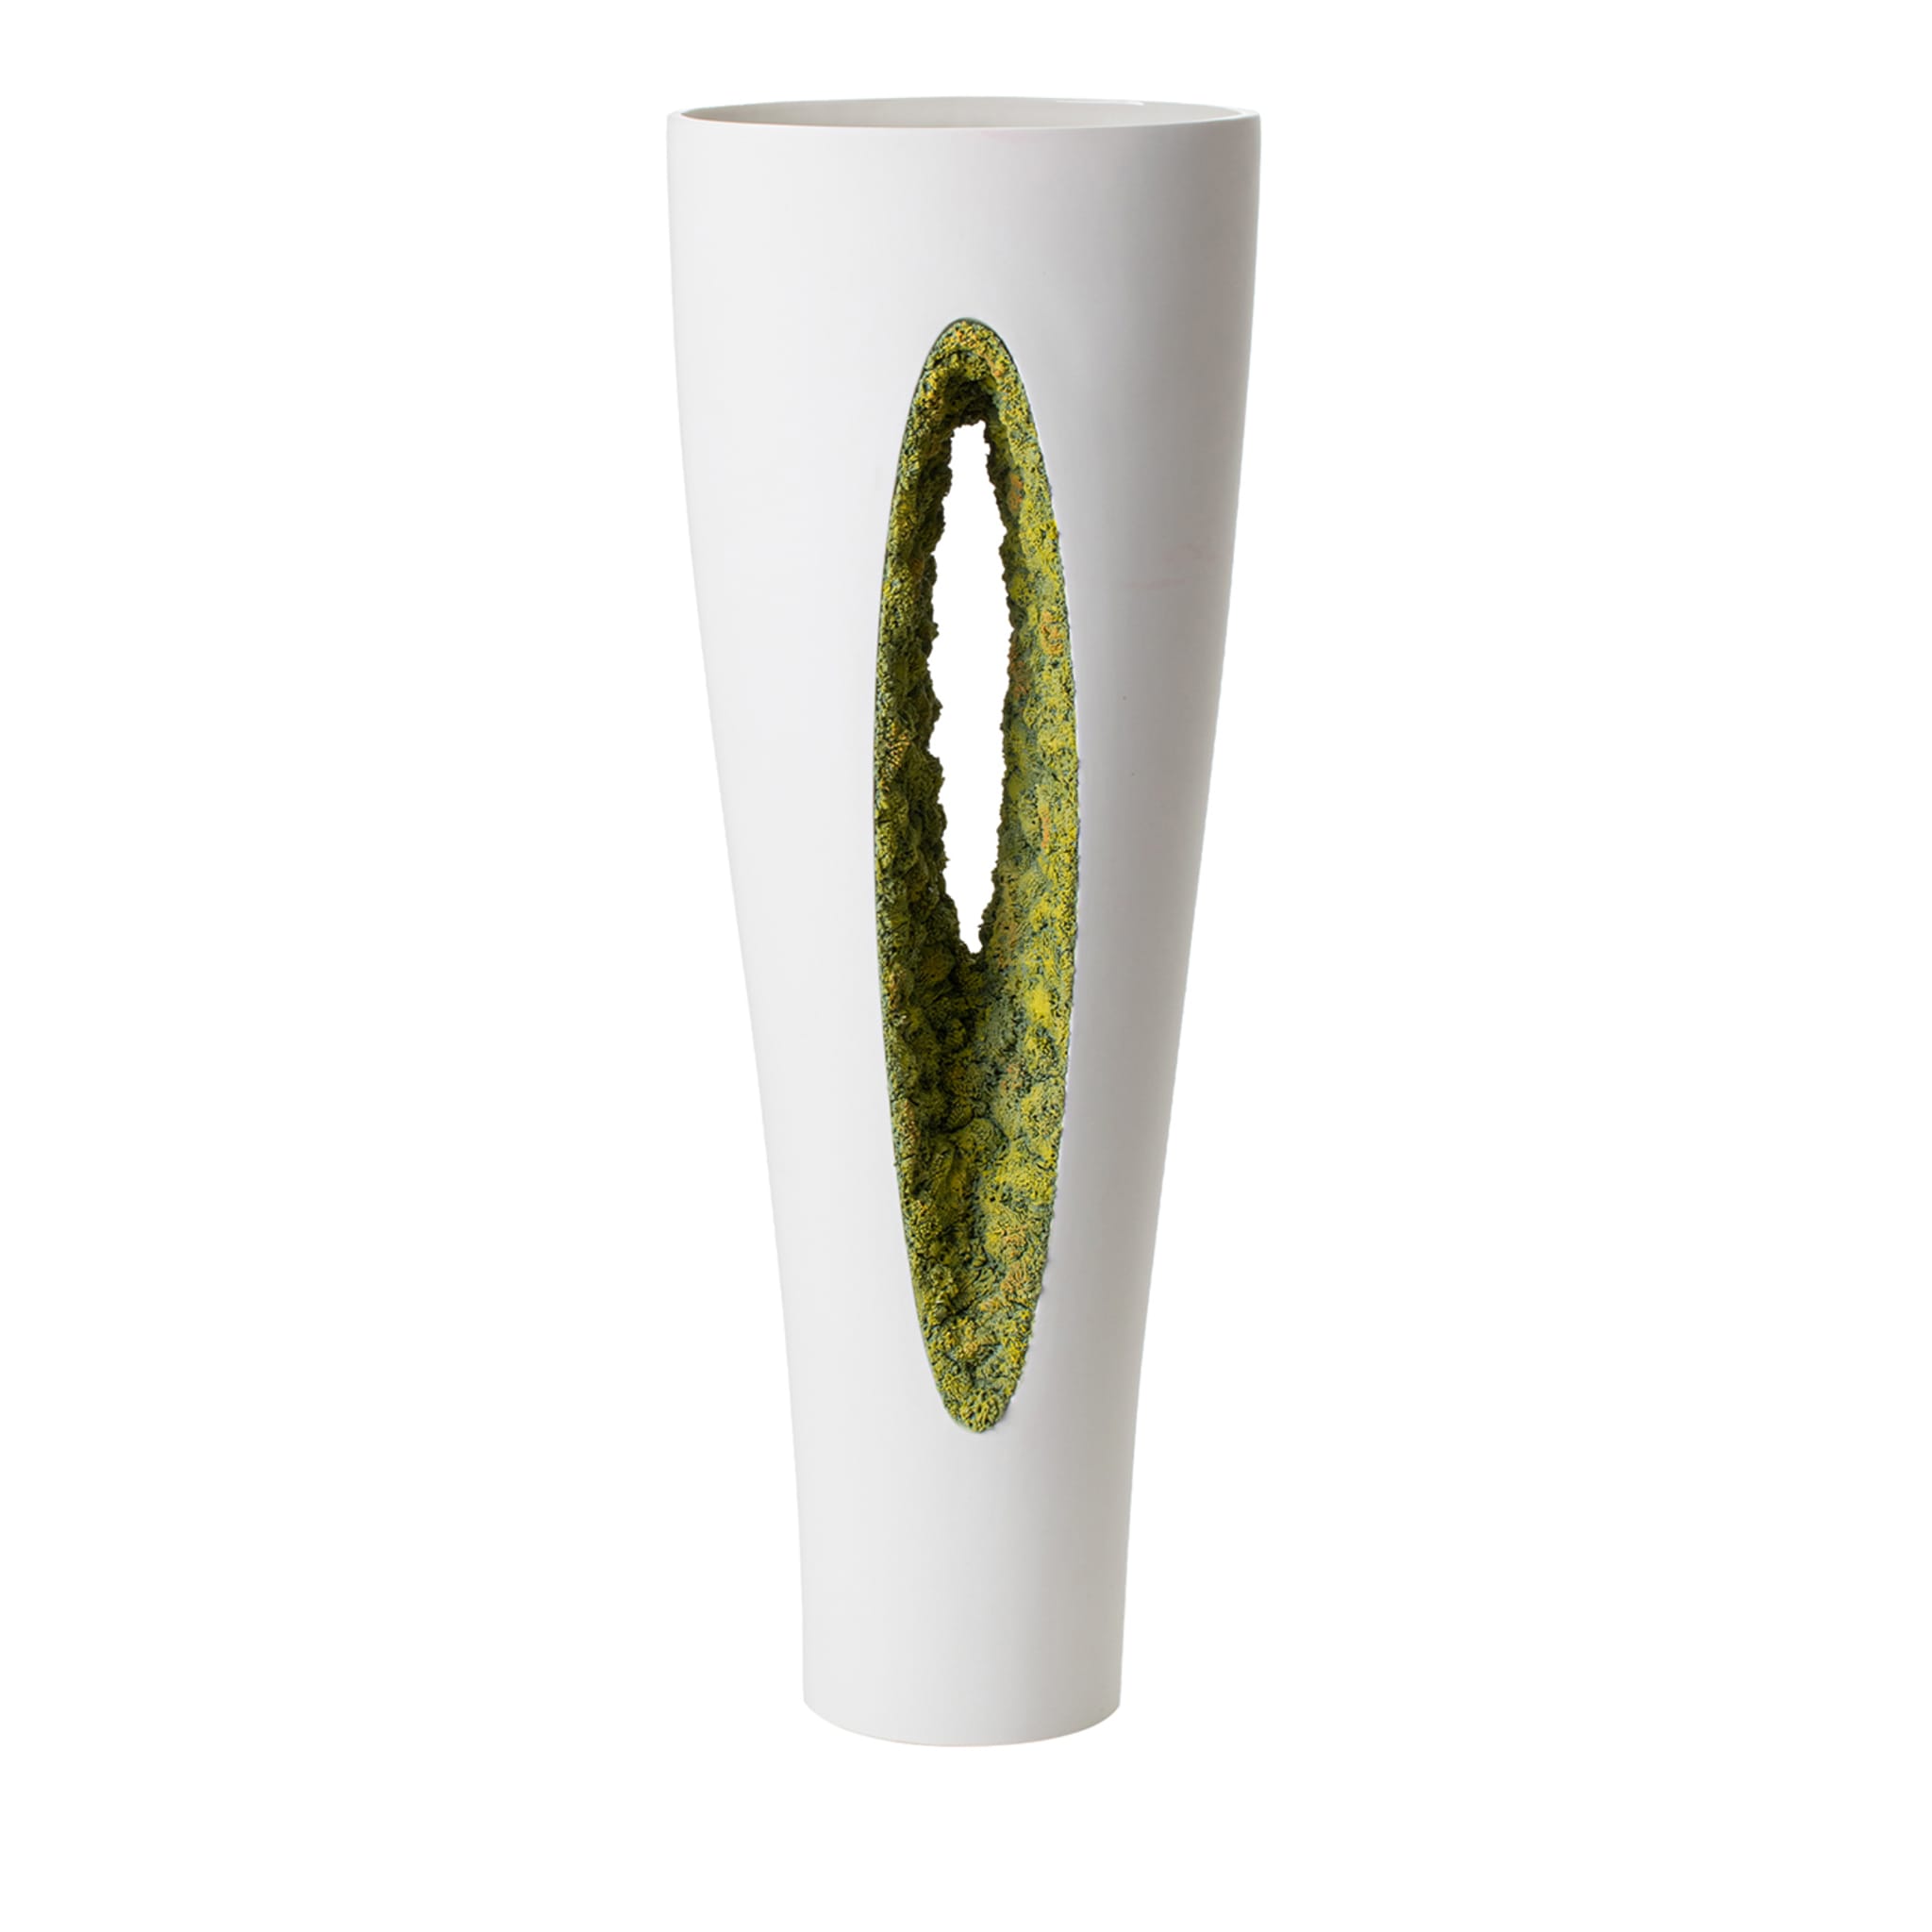 Vase mit grünem Moos von innen nach außen - Hauptansicht